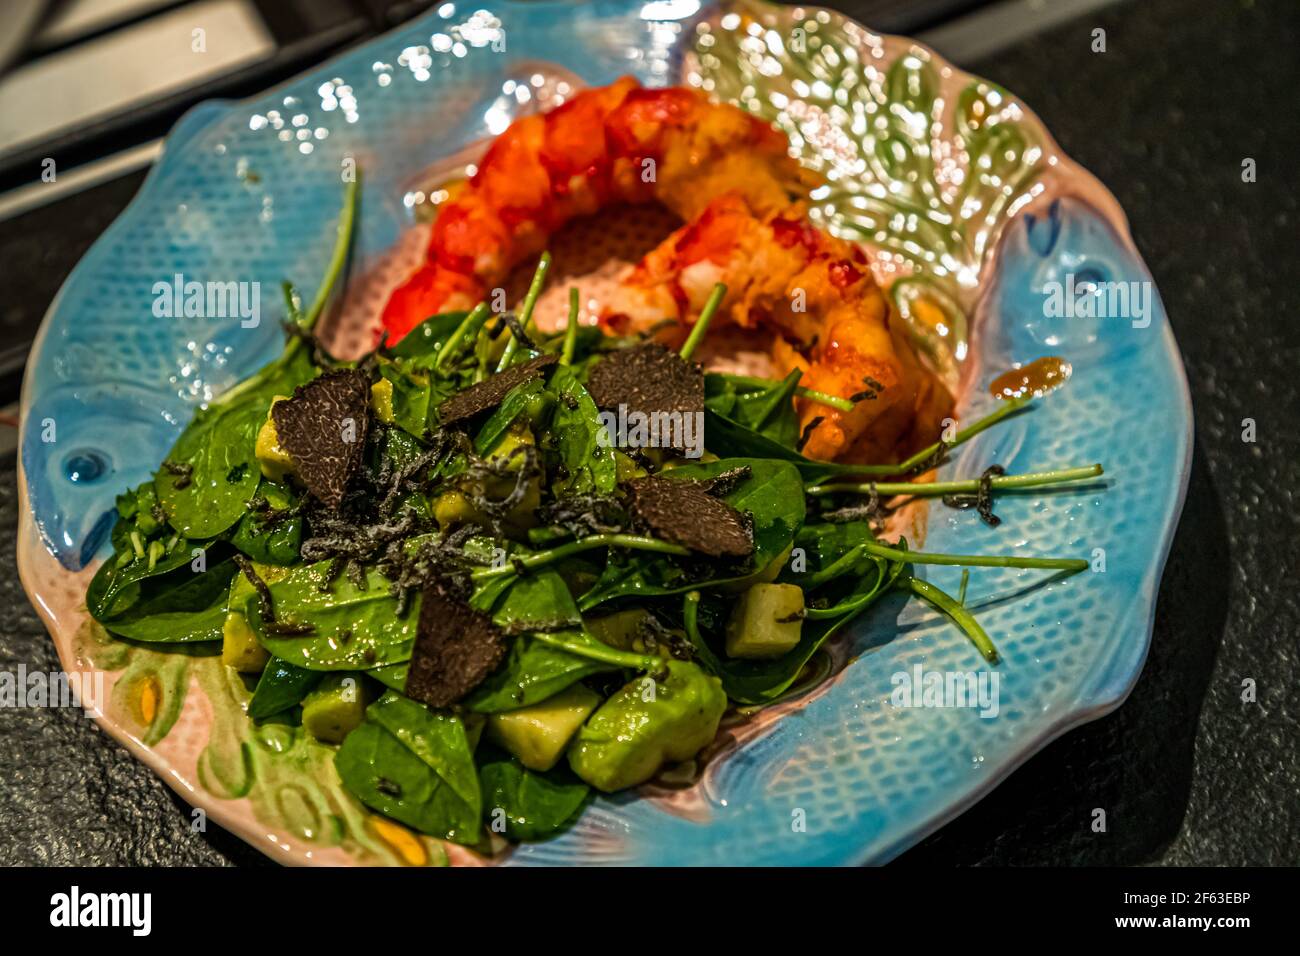 La viande des carabineros est servie avec la petite salade d'épinards, l'avocat, la sauce aux truffes blanches et la truffe noire râpée. Cours de cuisine en ligne avec le chef Song Lee du restaurant Nikkei Nine à Hambourg Banque D'Images